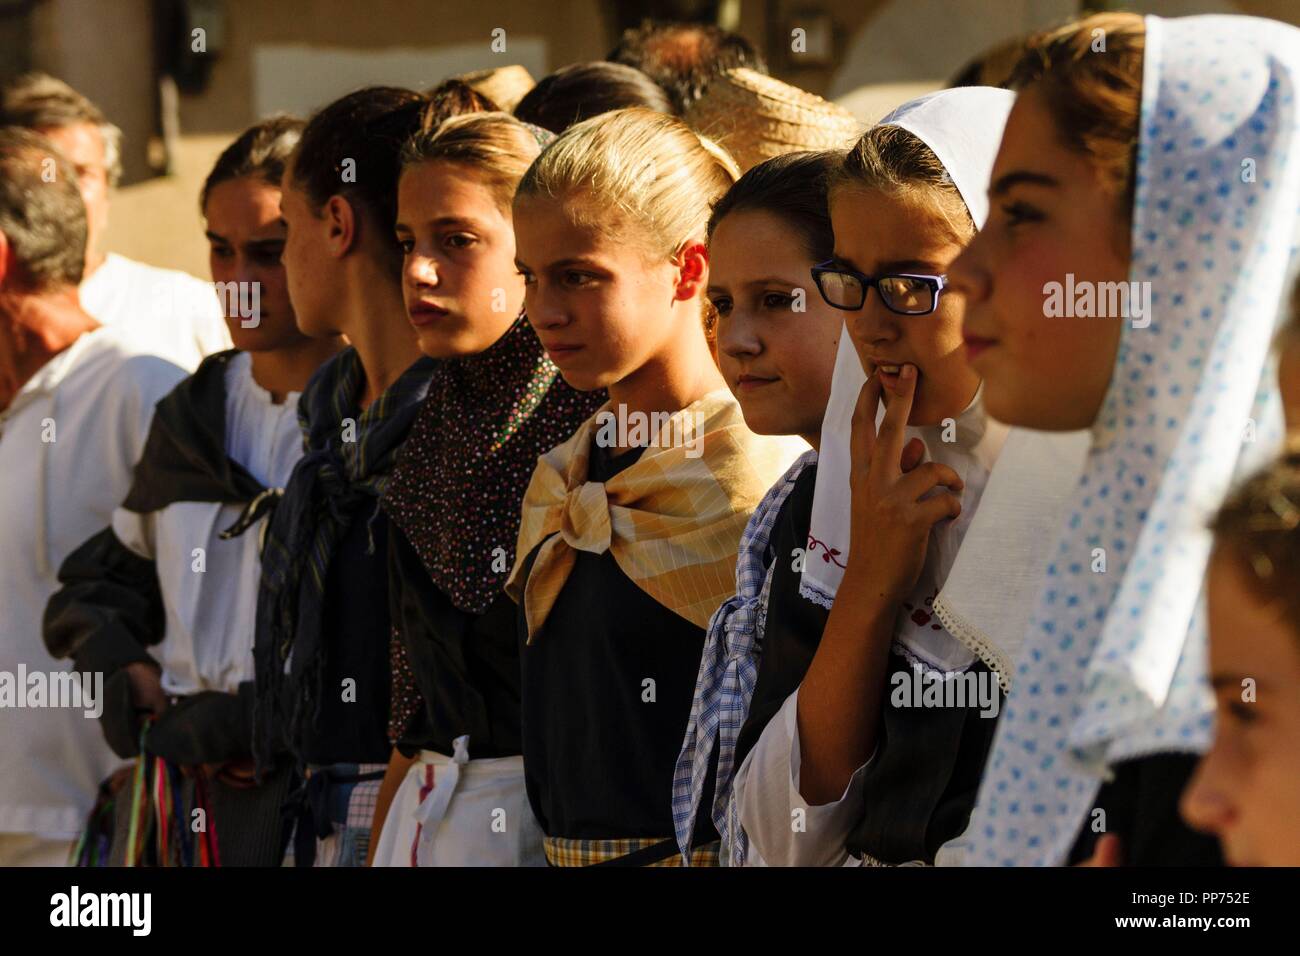 jovenes vestidas con traje tradicional,concurso de pisadores de uva, fiestas de Es Vermar, Binissalem, Mallorca, islas baleares, Spain, europa. Stock Photo